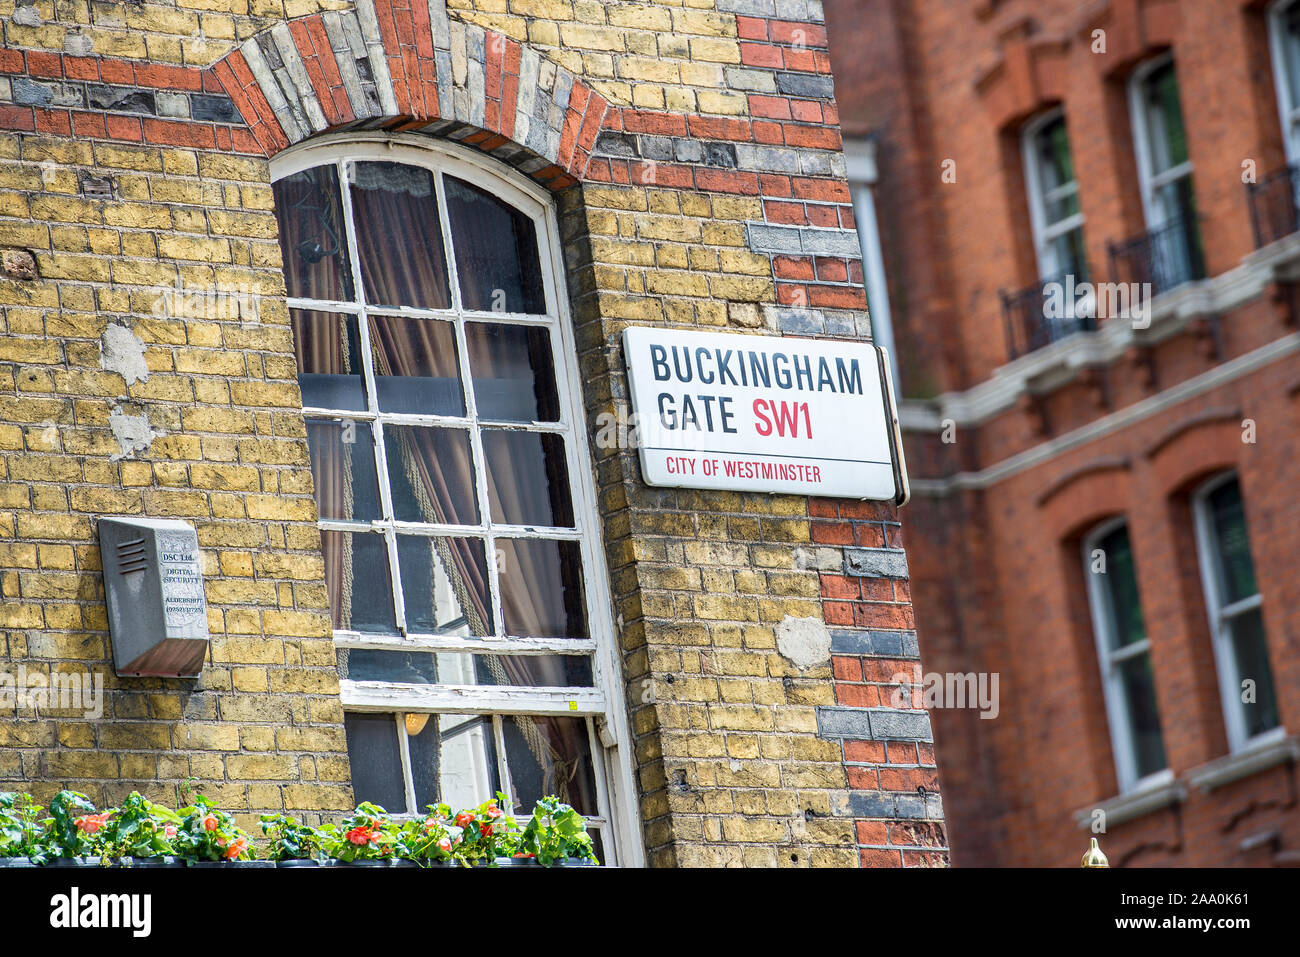 Buckingham Gate señal de la calle adjunta a la fachada de un edificio de ladrillo amarillo en una calle en Westminster, Londres Foto de stock